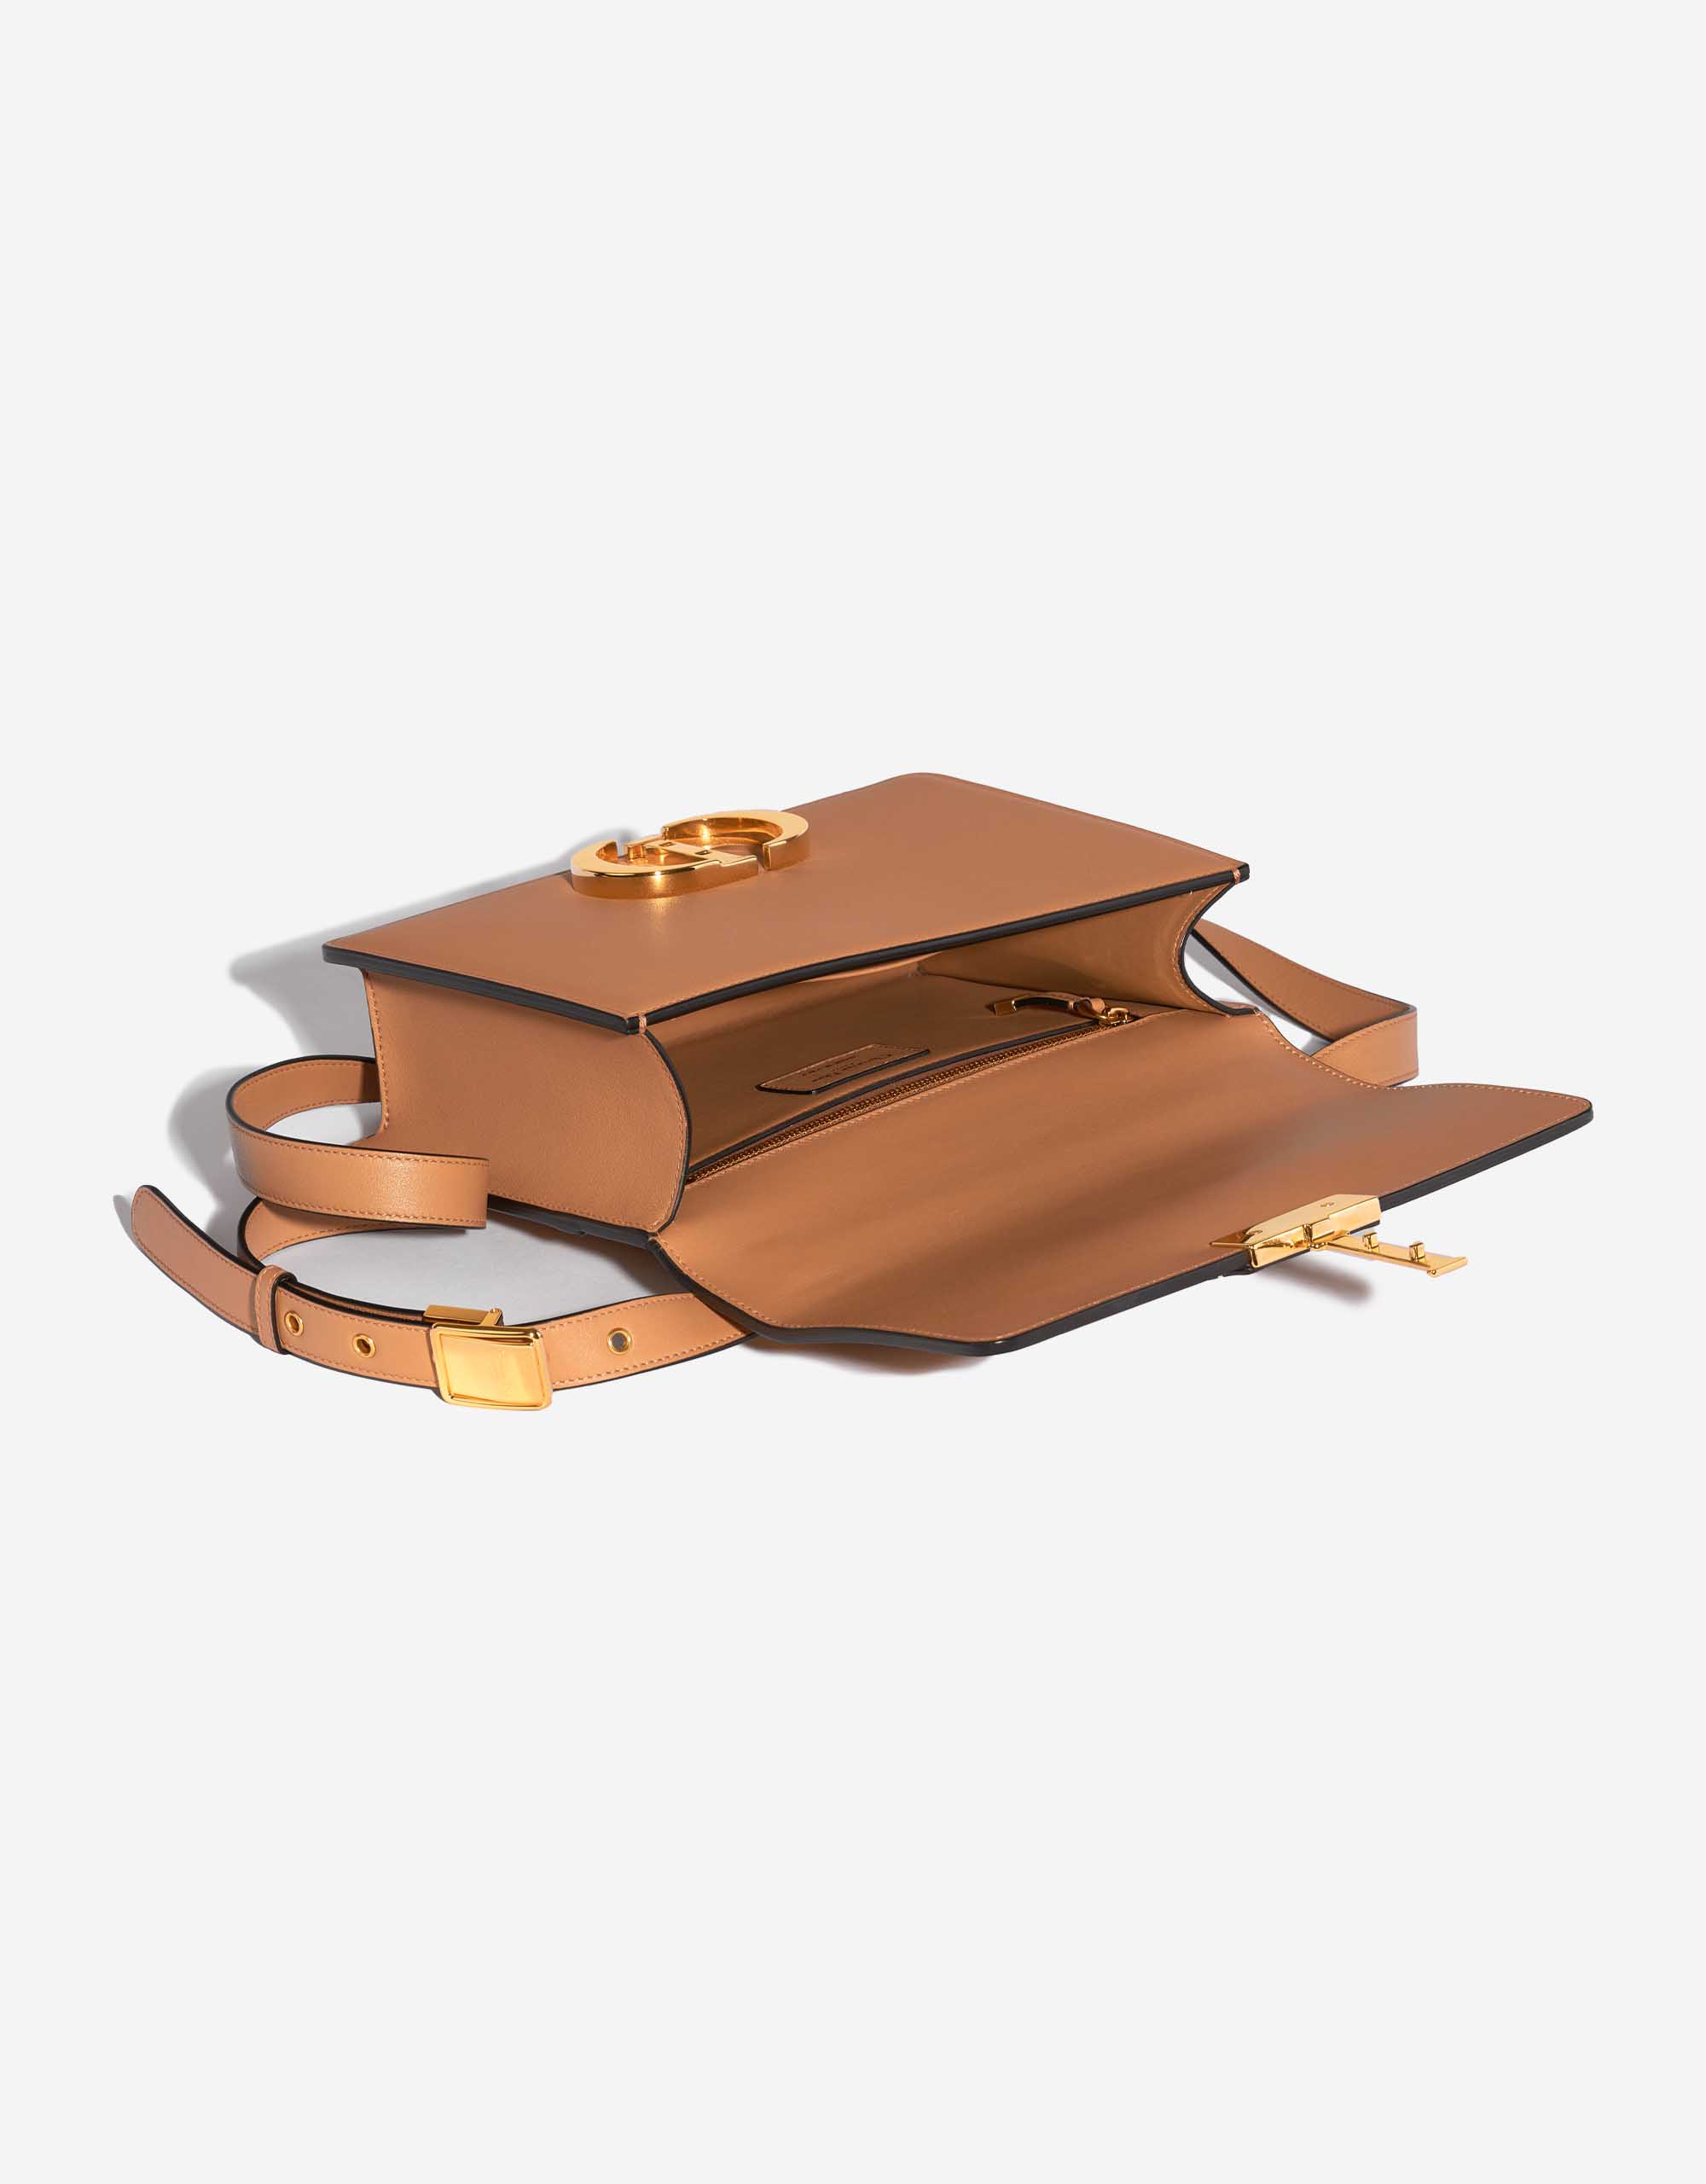 Gebrauchte Dior Tasche 30 Montaigne Kalbsleder Beige Beige, Braun Innenseite | Verkaufen Sie Ihre Designertasche auf Saclab.com